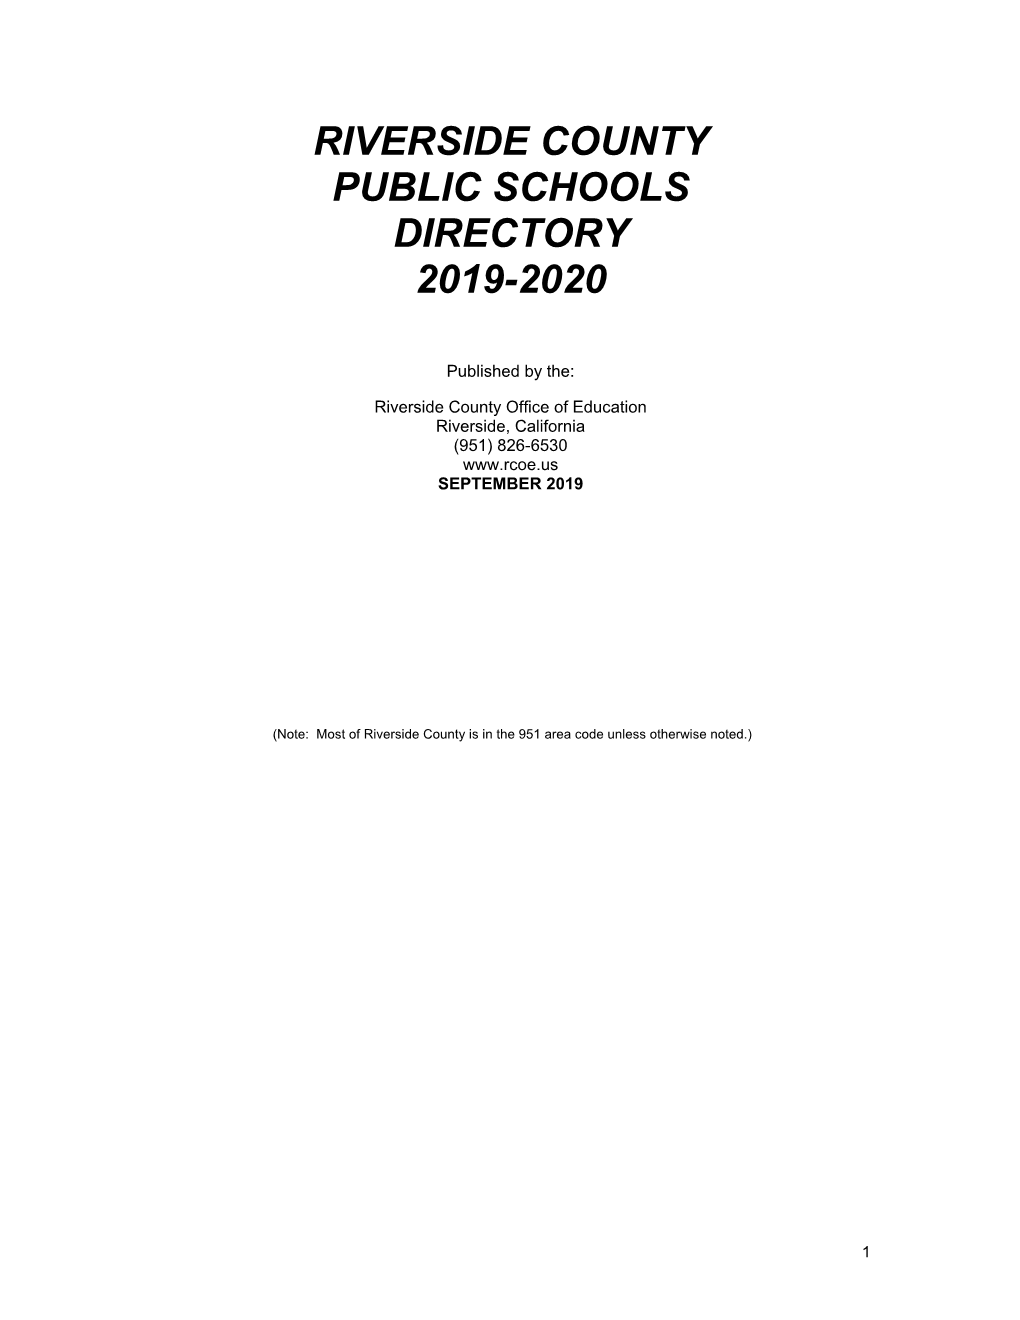 Riverside County Public Schools Directory 2019-2020